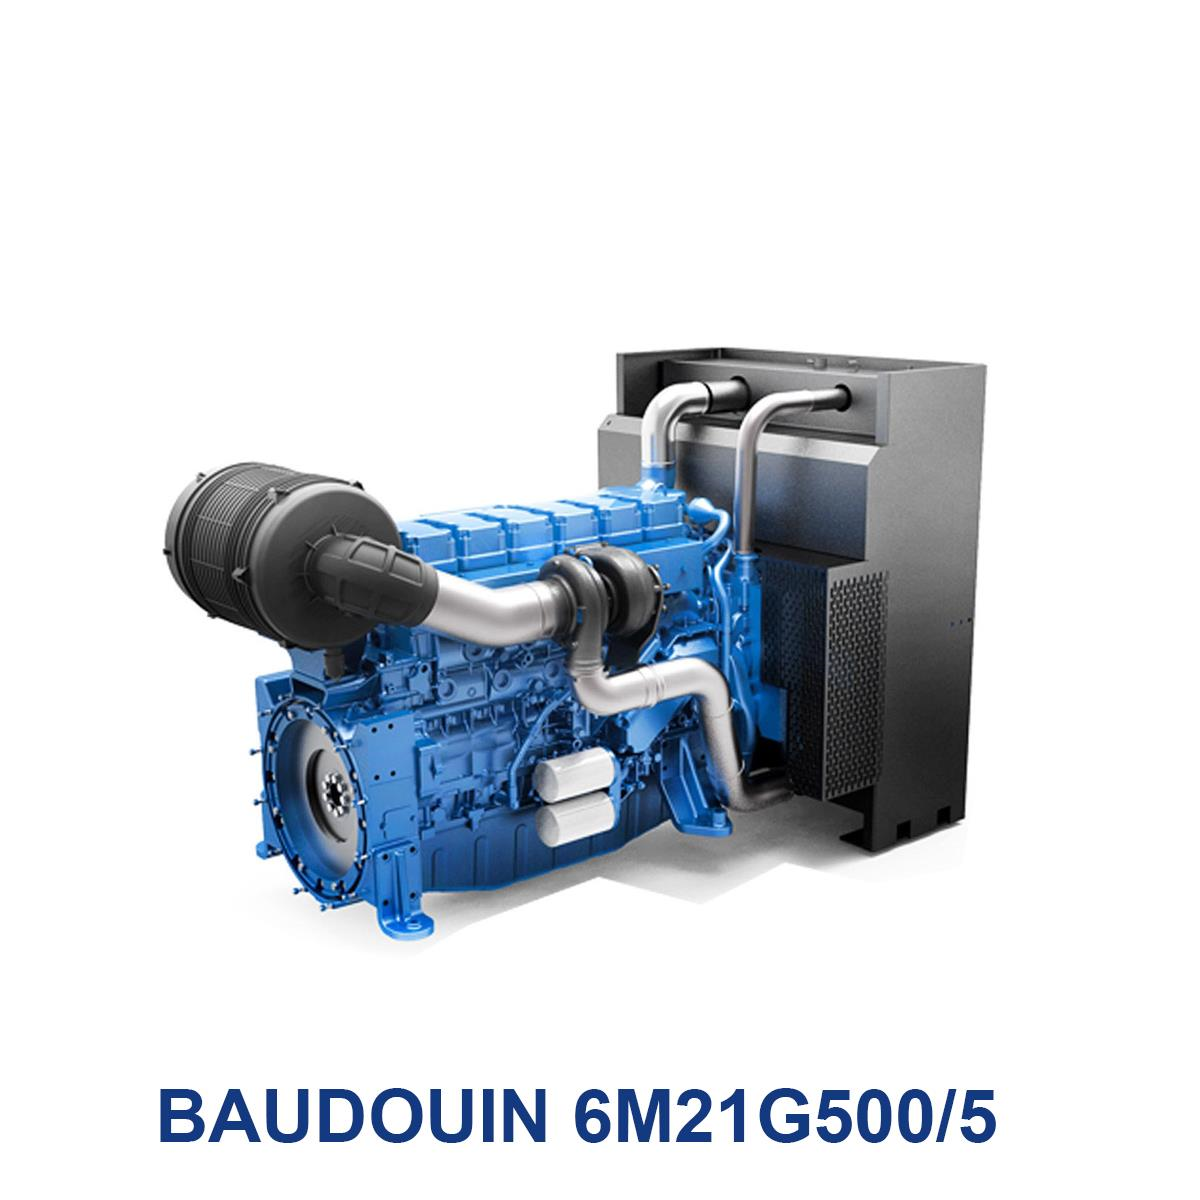 BAUDOUIN-6M21G500_5